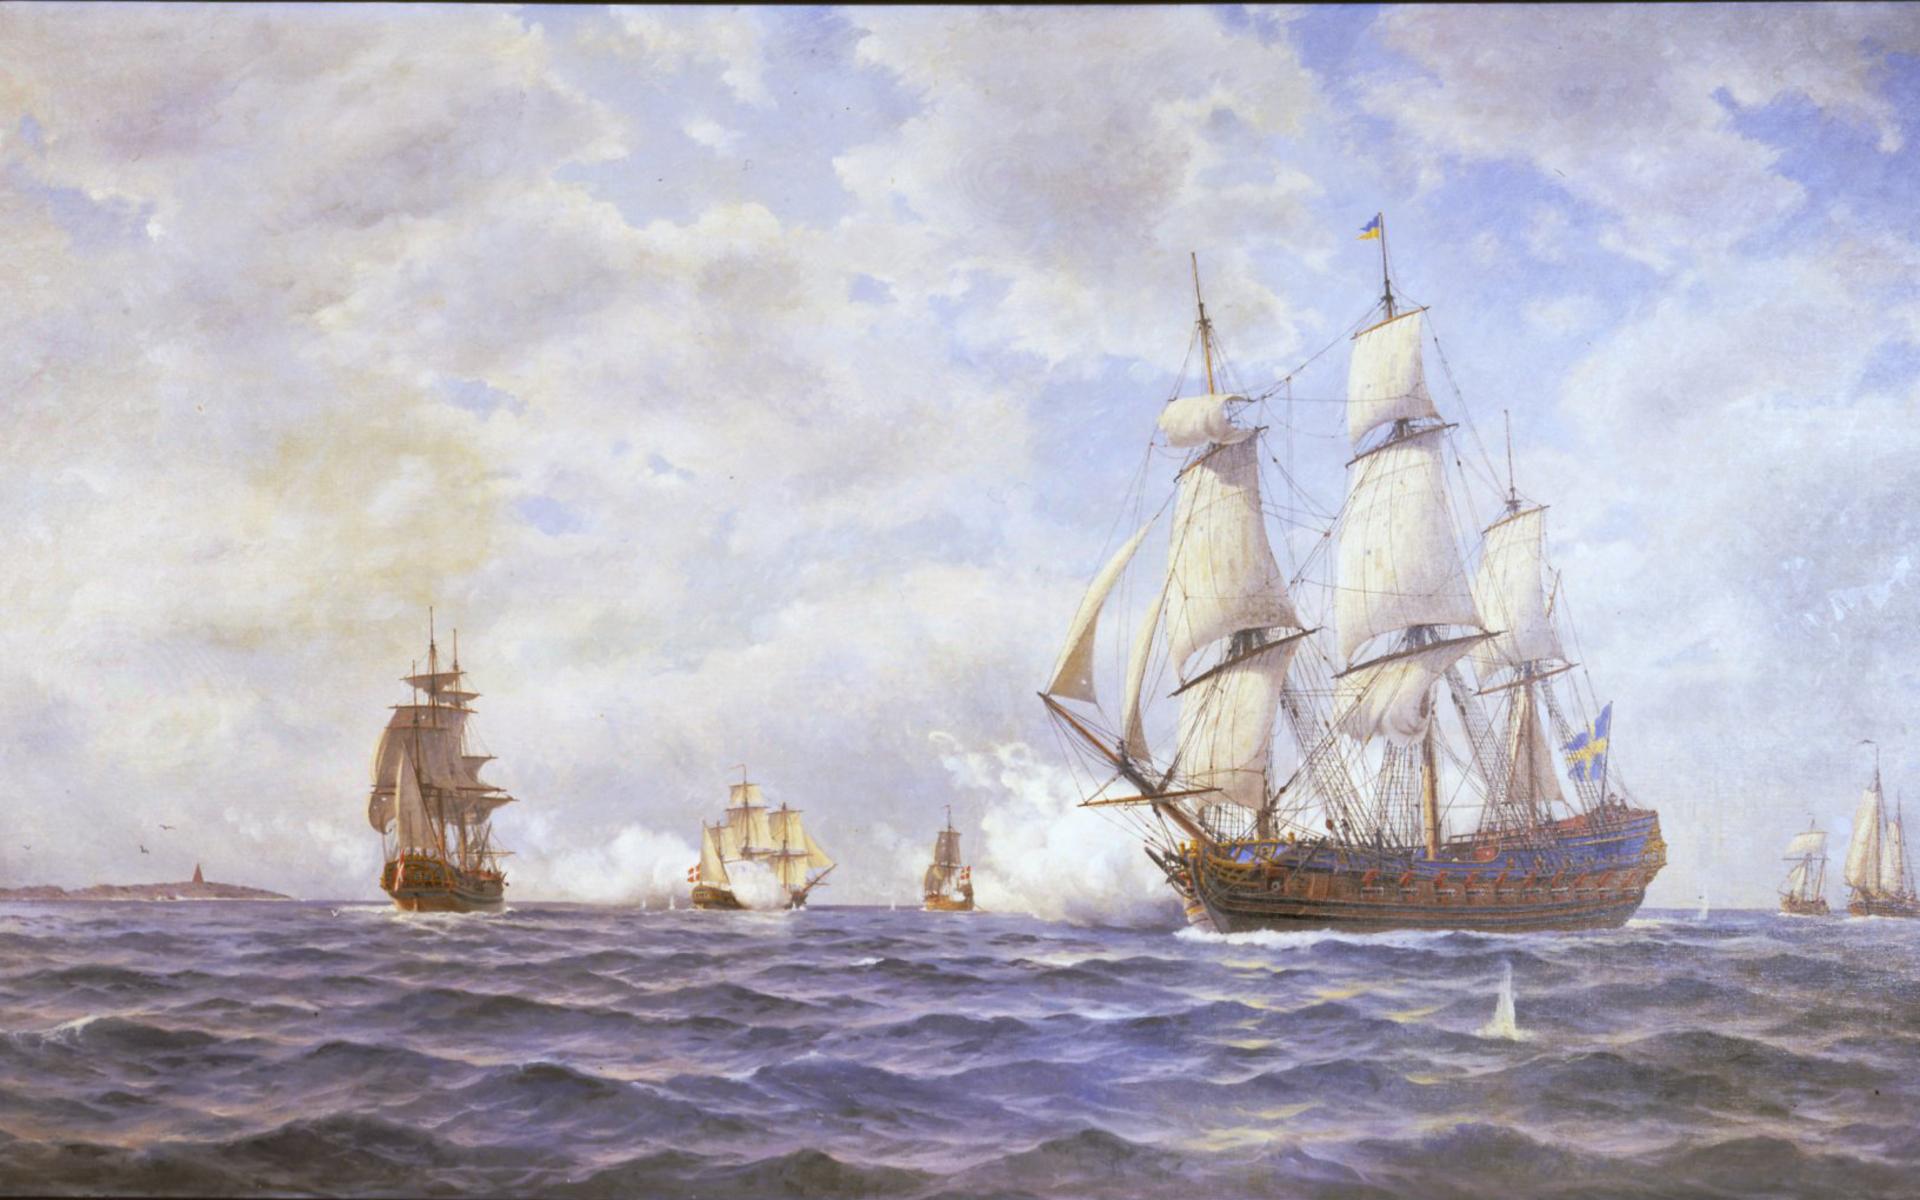 Jacob Hägg avbildade både historiska och samtida fartyg, både sådana han själv haft befälet på och andra. 